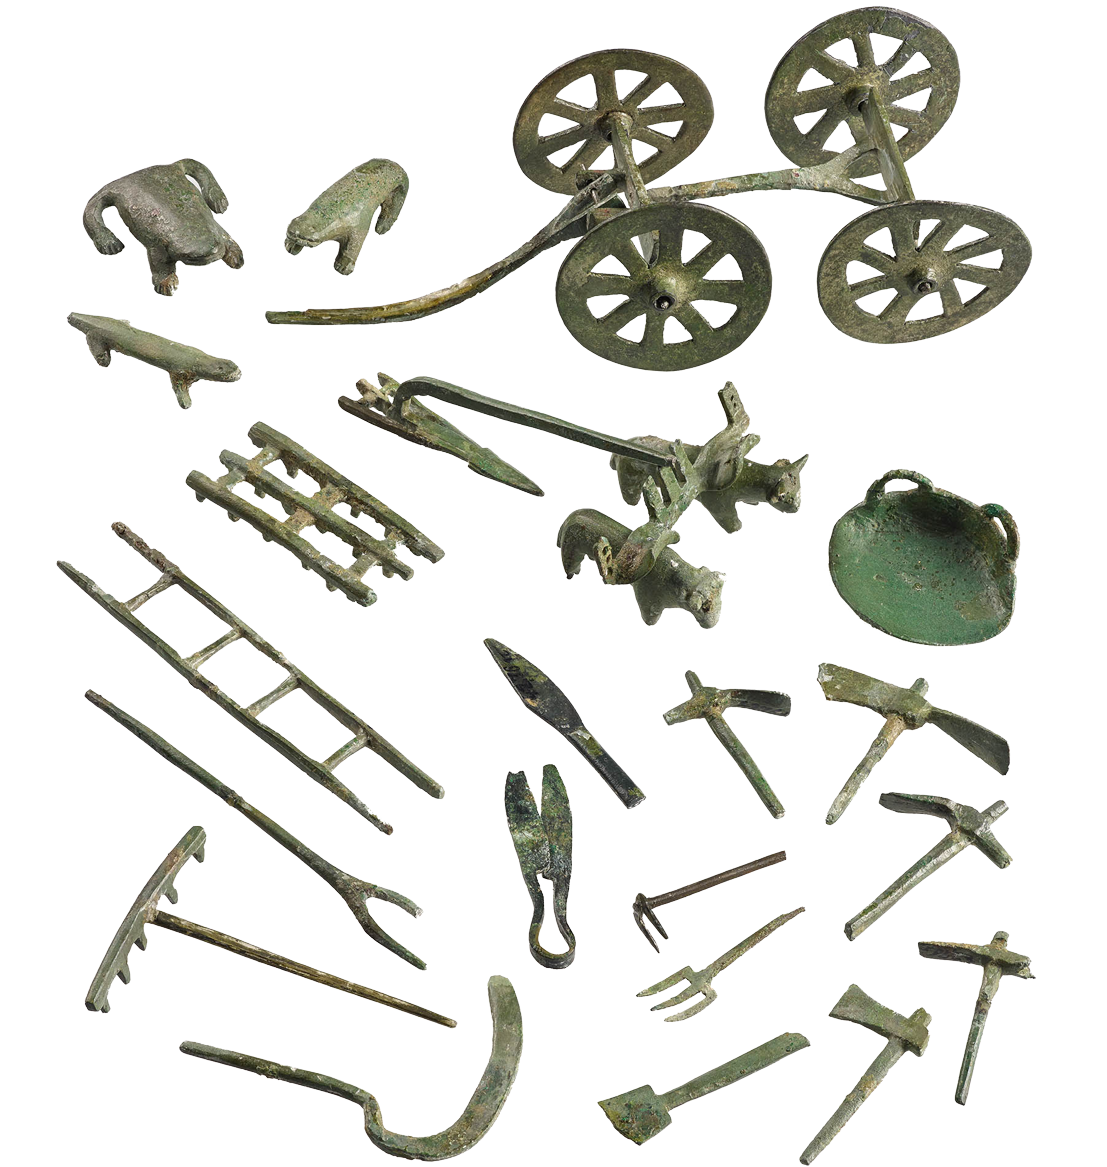 Miniatur-Nachbildungen landwirtschaftlicher Geräte. Beigaben aus einer römischen Bestattung des 4. Jahrhunderts n. Chr. in Köln-Rodenkirchen.